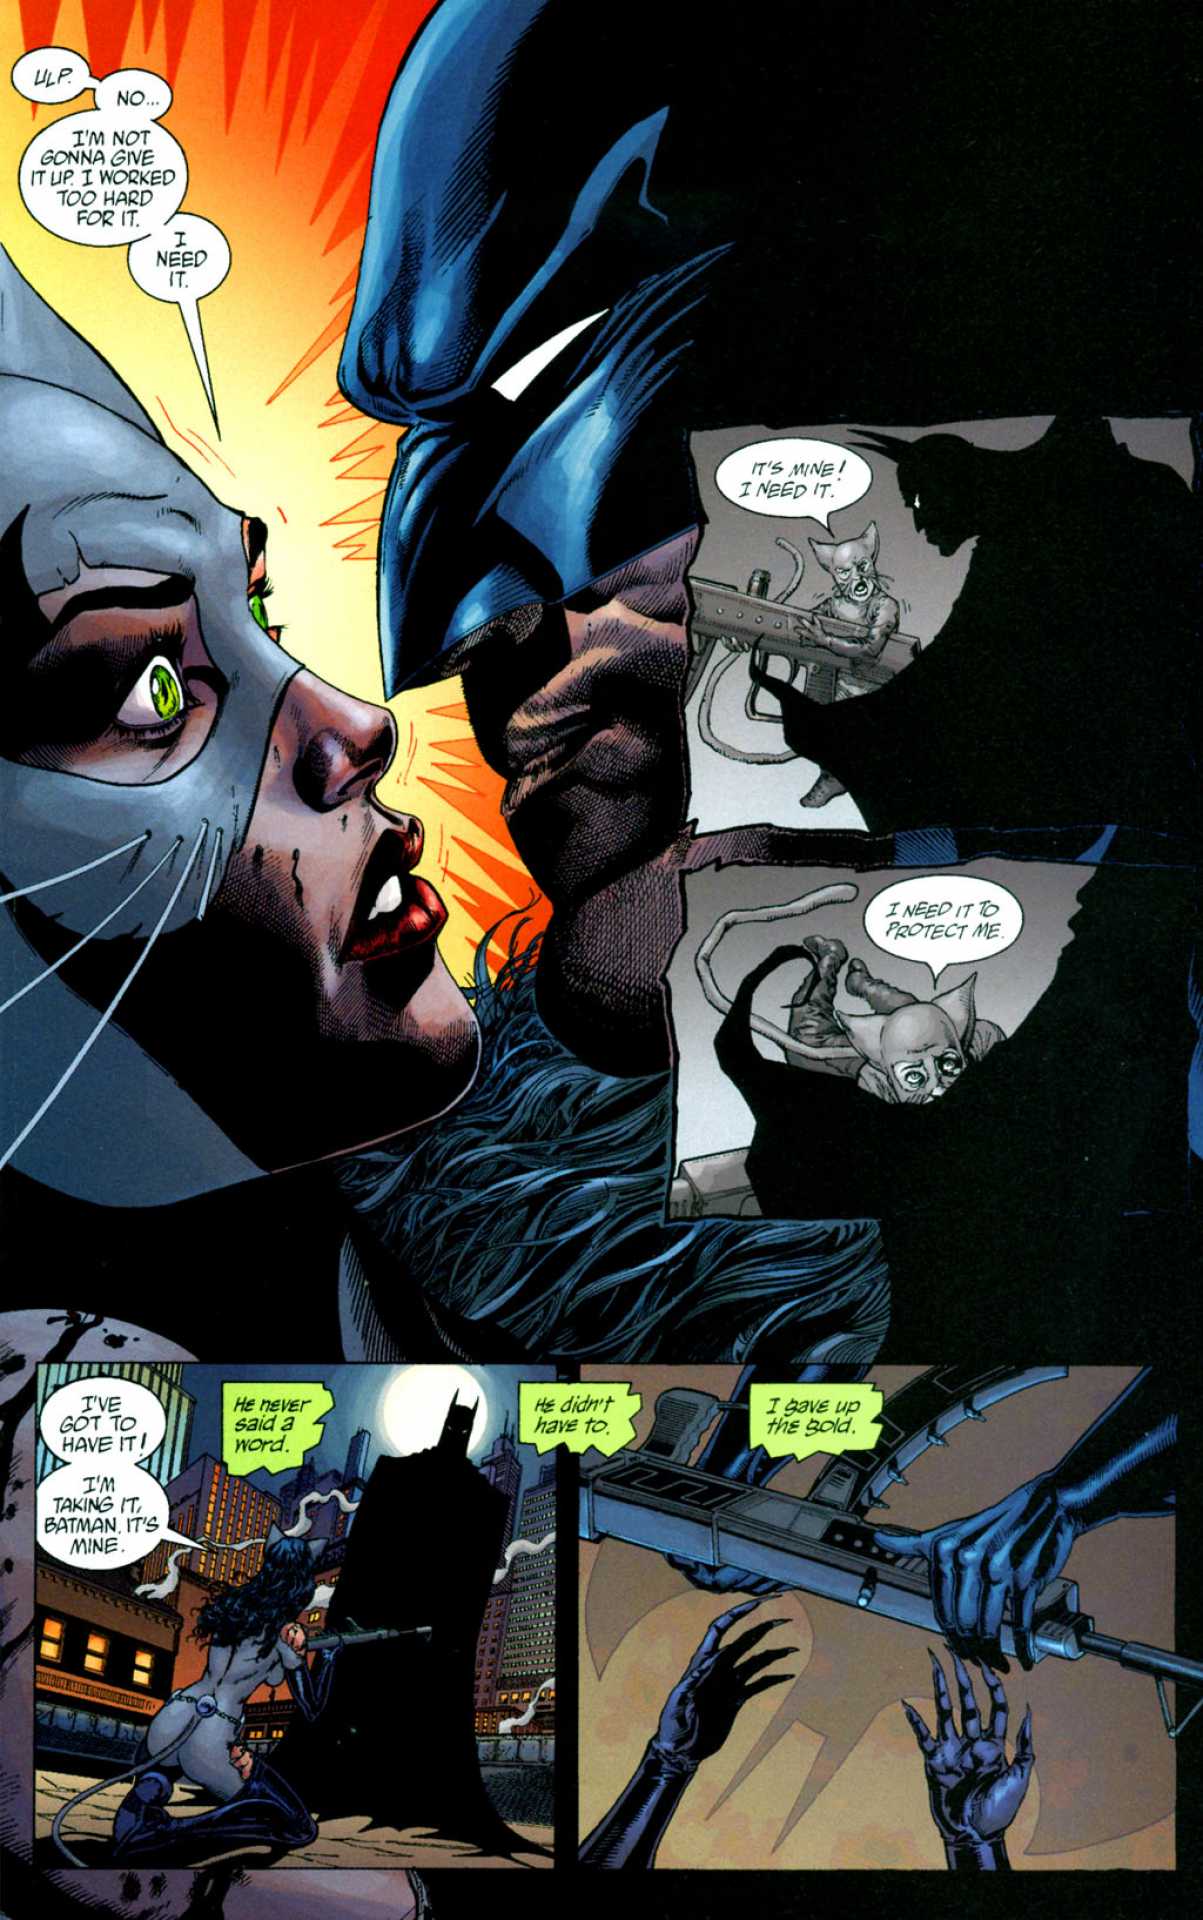 Batman Catwoman: Trail Of The Gun  Backgrounds, Compatible - PC, Mobile, Gadgets| 1203x1920 px